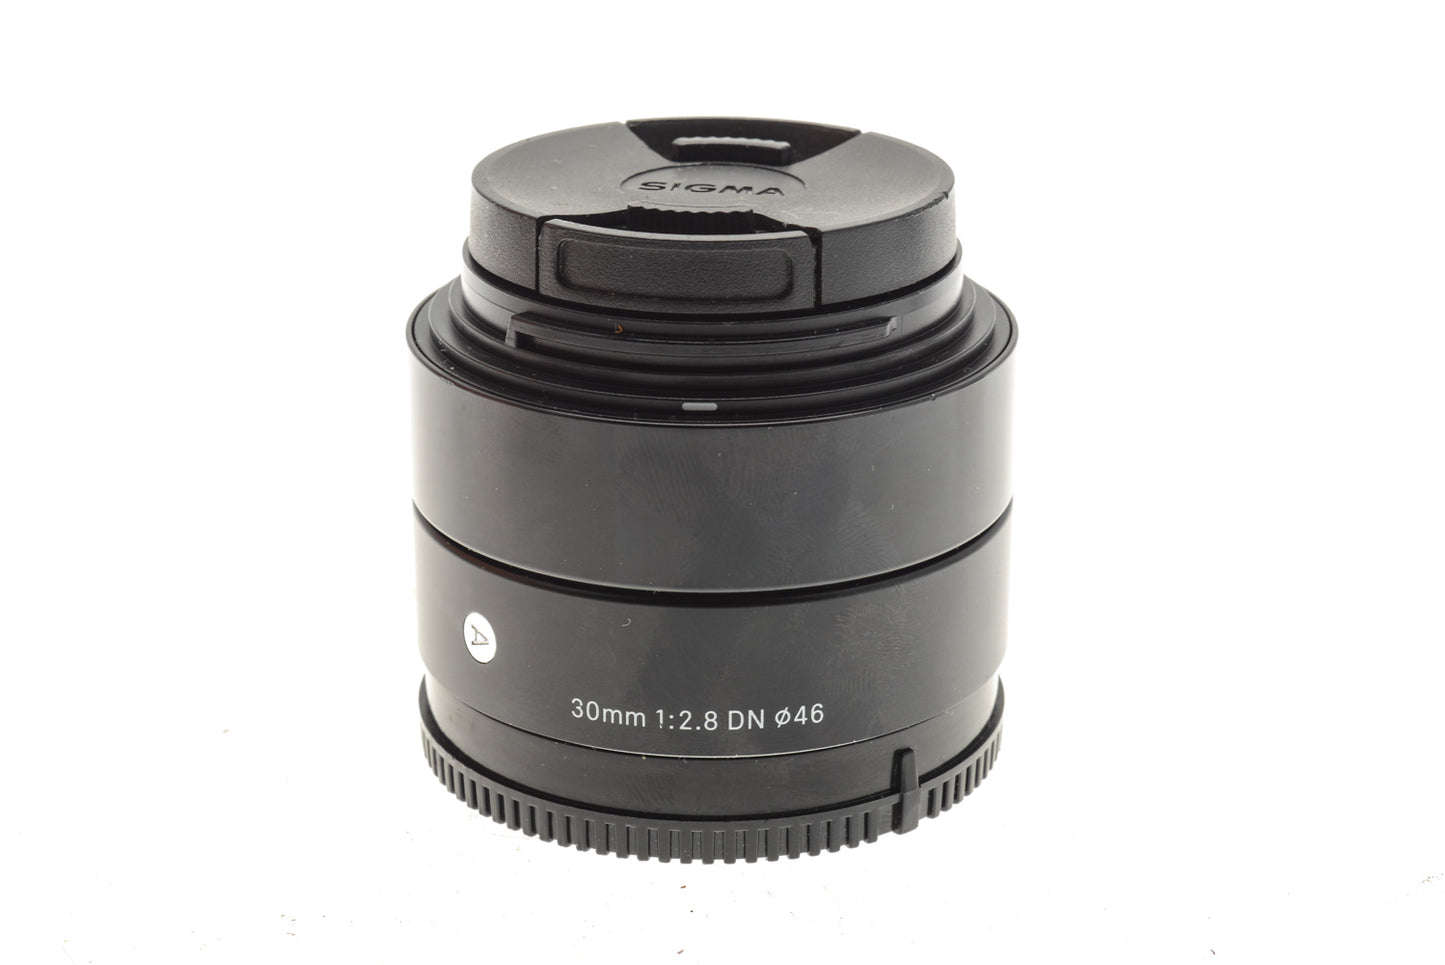 Sigma 30mm f2.8 EX DN E - Lens